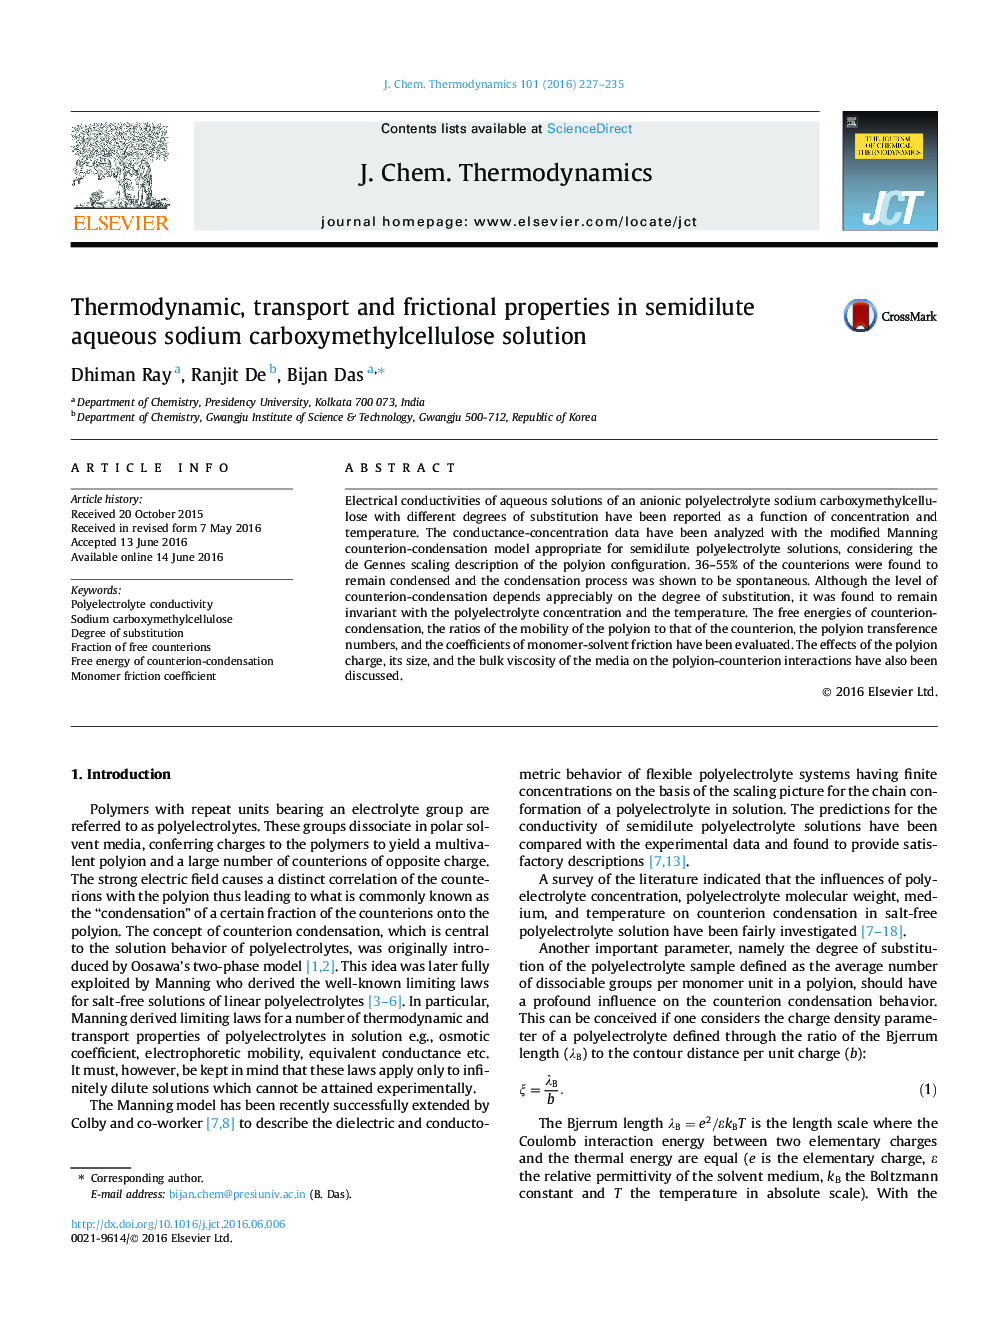 خواص ترمودینامیکی، حمل و نقل و اصطکاک در محلول سدیم کربوکسی متیل سلولز سدیم آبی 